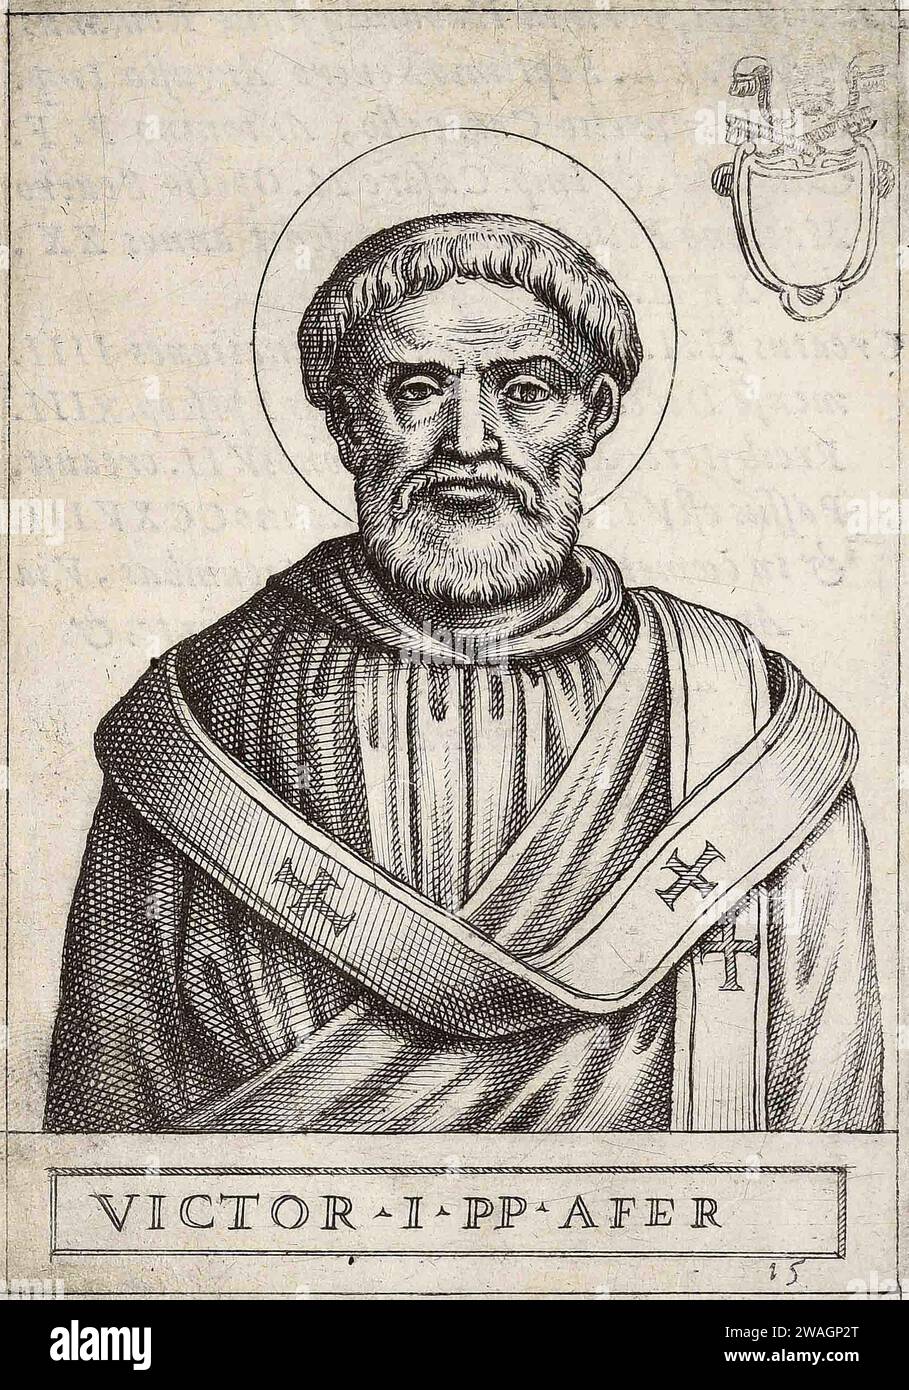 Un'illustrazione del 1580 di papa Vittorio i, che fu pontefice dall'AD189 all'AD199. Era il quattordicesimo papa e, essendo nato nel Nord Africa occupato dai romani, fu il primo papa berbero e il primo non europeo. Foto Stock